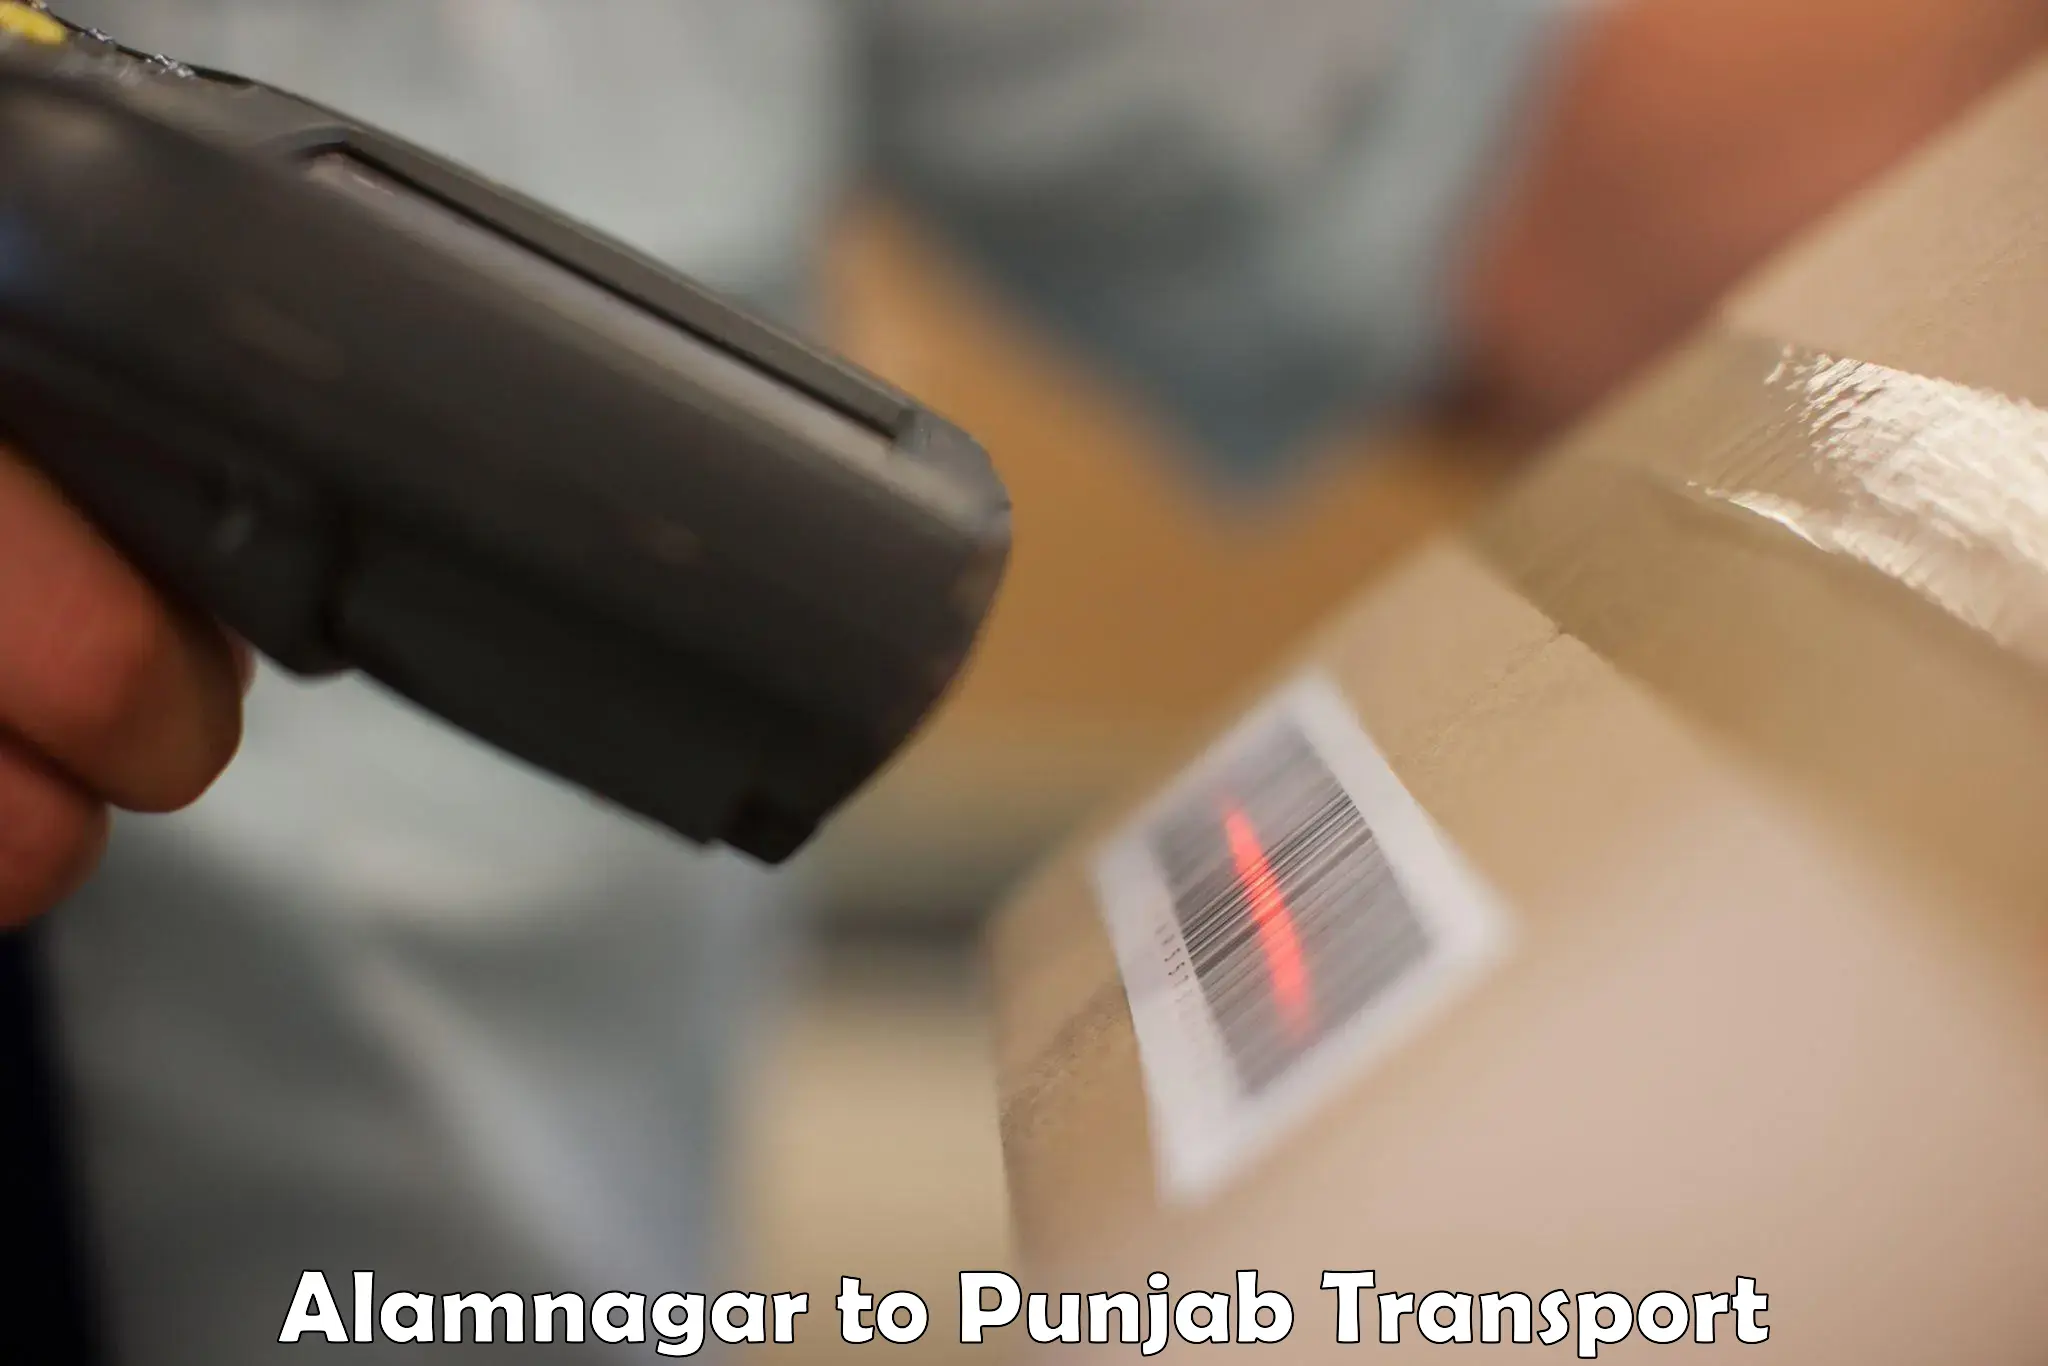 Two wheeler transport services Alamnagar to Mandi Gobindgarh